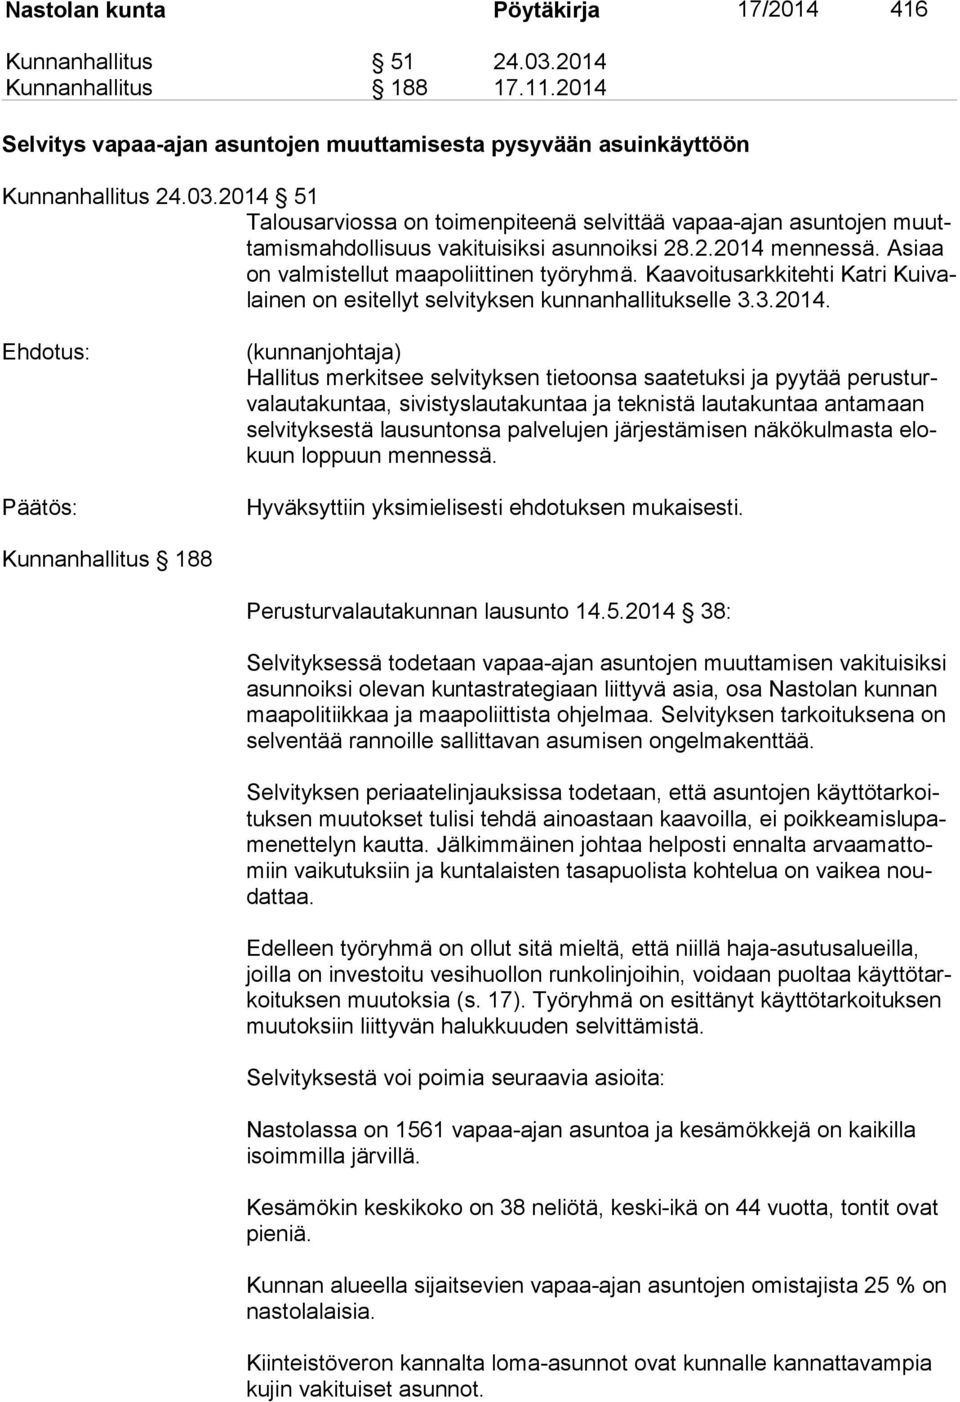 mennessä. Asiaa on valmistellut maapoliittinen työryhmä. Kaavoitusarkkitehti Katri Kuivalainen on esitellyt selvityksen kunnanhallitukselle 3.3.2014.